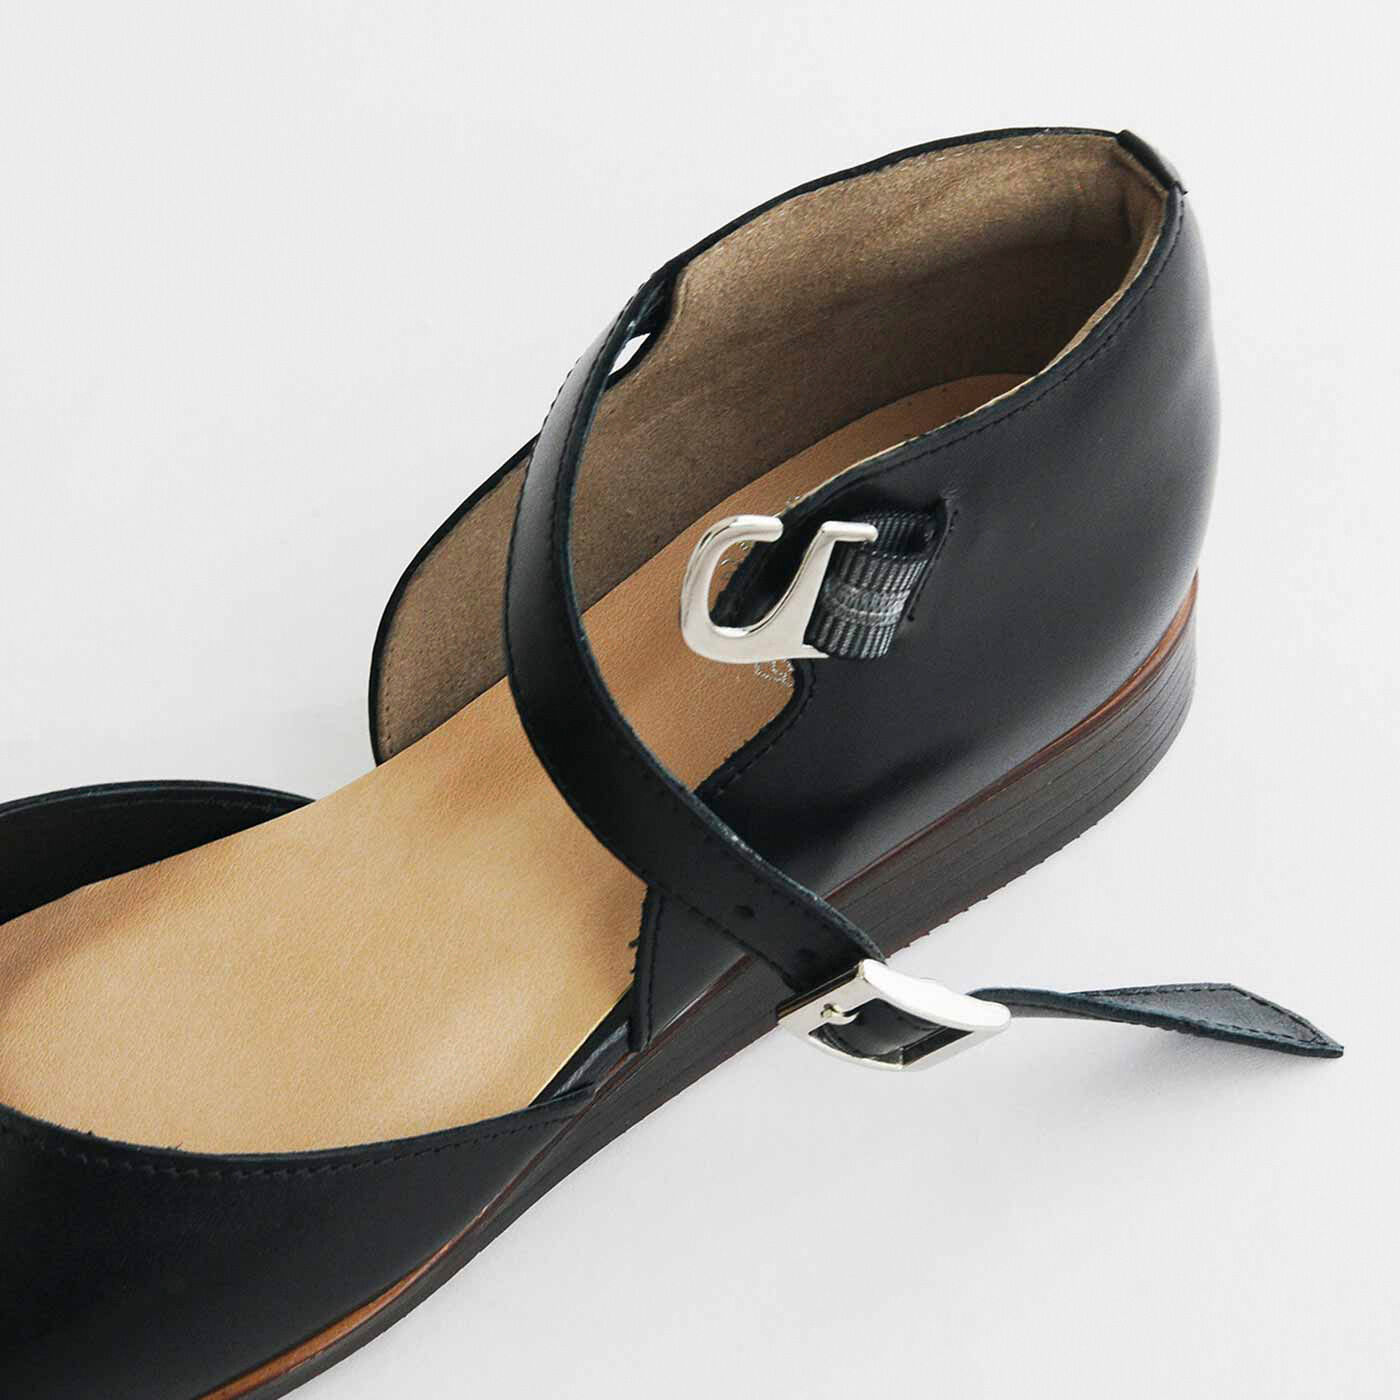 ＆Stories|長田靴職人が叶えた 本革ストラップトウシューズ〈ブラックキャット〉[本革 靴：日本製]|金具は脱ぎ履きがスムーズなフックタイプ。ストラップは調整できるから、素足でも厚手ソックスもOK。